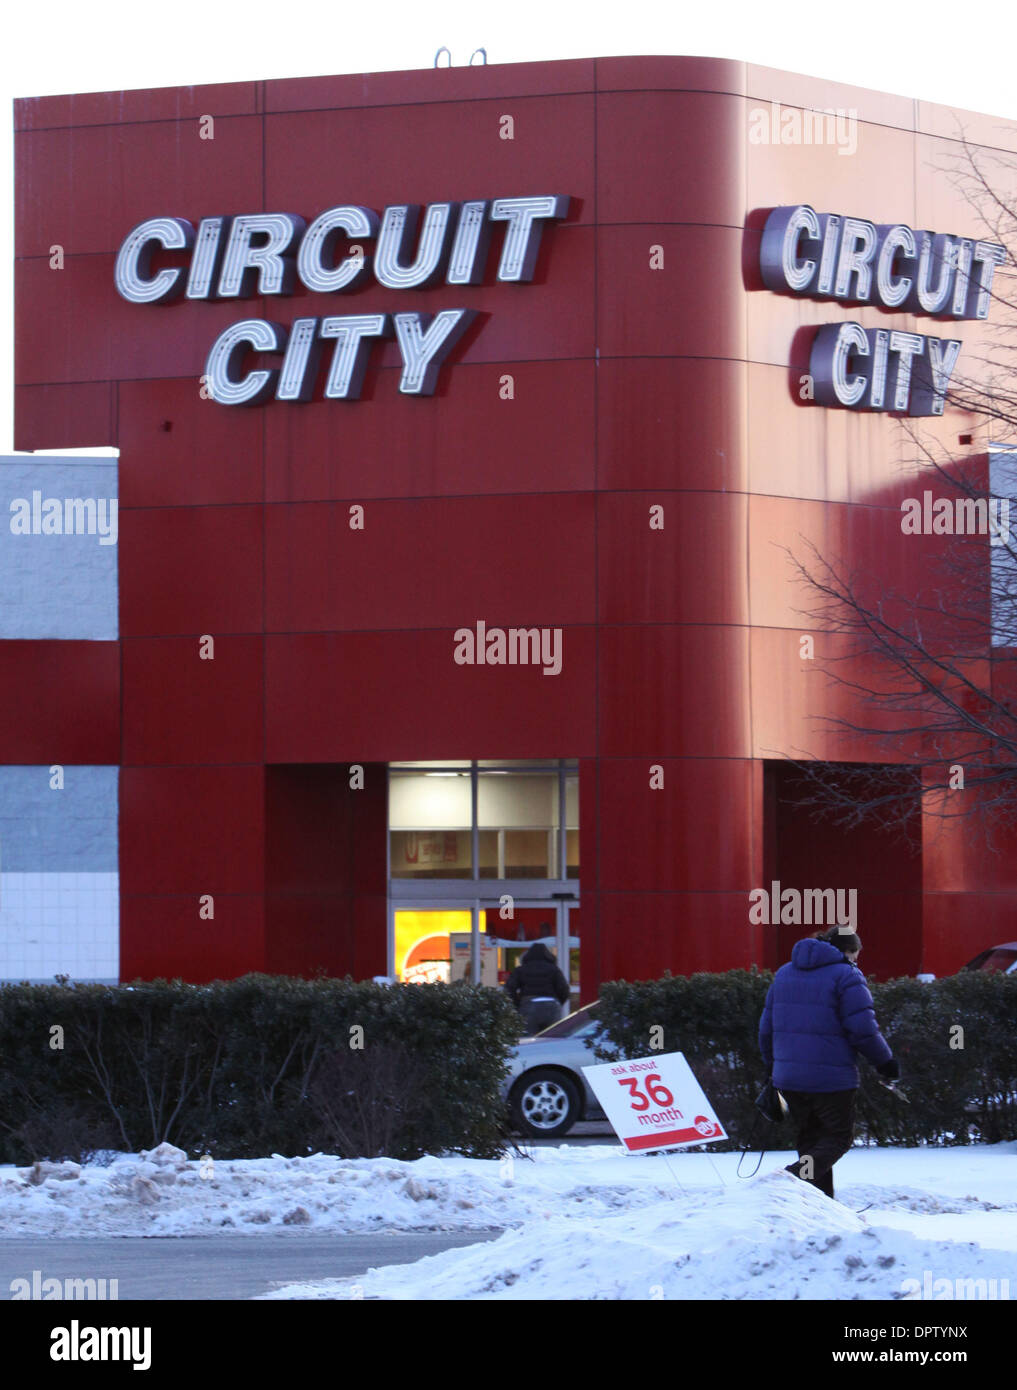 16. Januar 2009 - North Haven, Connecticut, USA - Circuit City zu liquidieren, shutter Läden. Konkurs Elektronikhändler Circuit City Stores sagte am Freitag wird es seine Vermögenswerte zu liquidieren und Hunderte von US-Läden geschlossen, nach dem gescheiterten Versuch einen Deal zu verkaufen das Unternehmen erreichen. Circuit City gehört zu den größten Retail-Insolvenzen in der aktuellen Rezession in den USA. Seinen Untergang ebnet den Weg für l Stockfoto